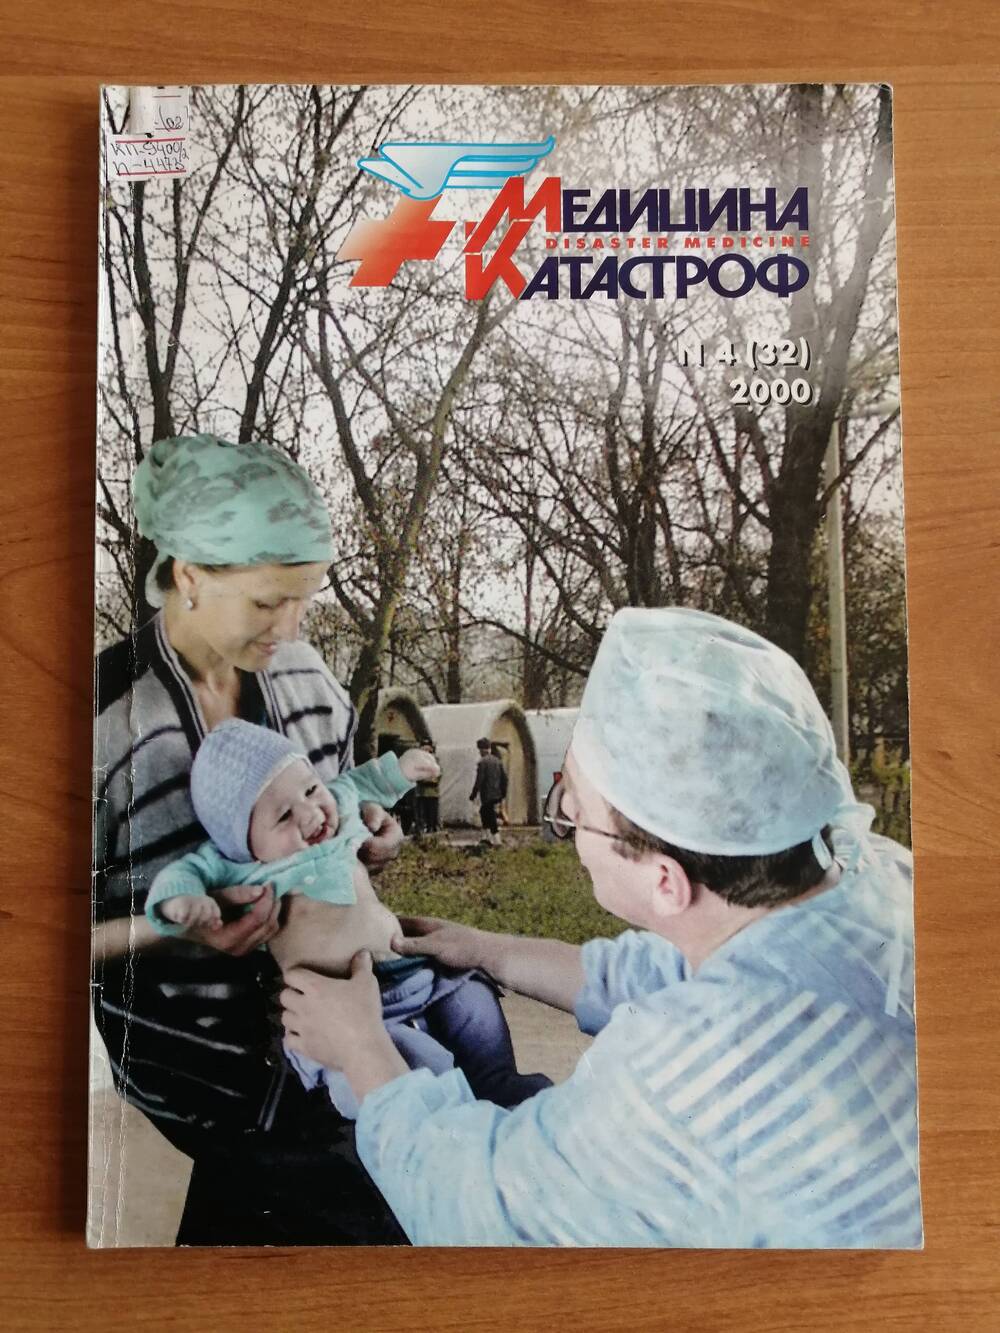 Журнал Медицина катастроф №4 (32) за 2000 г. с публикациями Вяткина А.А. в соавторстве с другими врачами на с.30 и 79 и его фотографией на обложке.